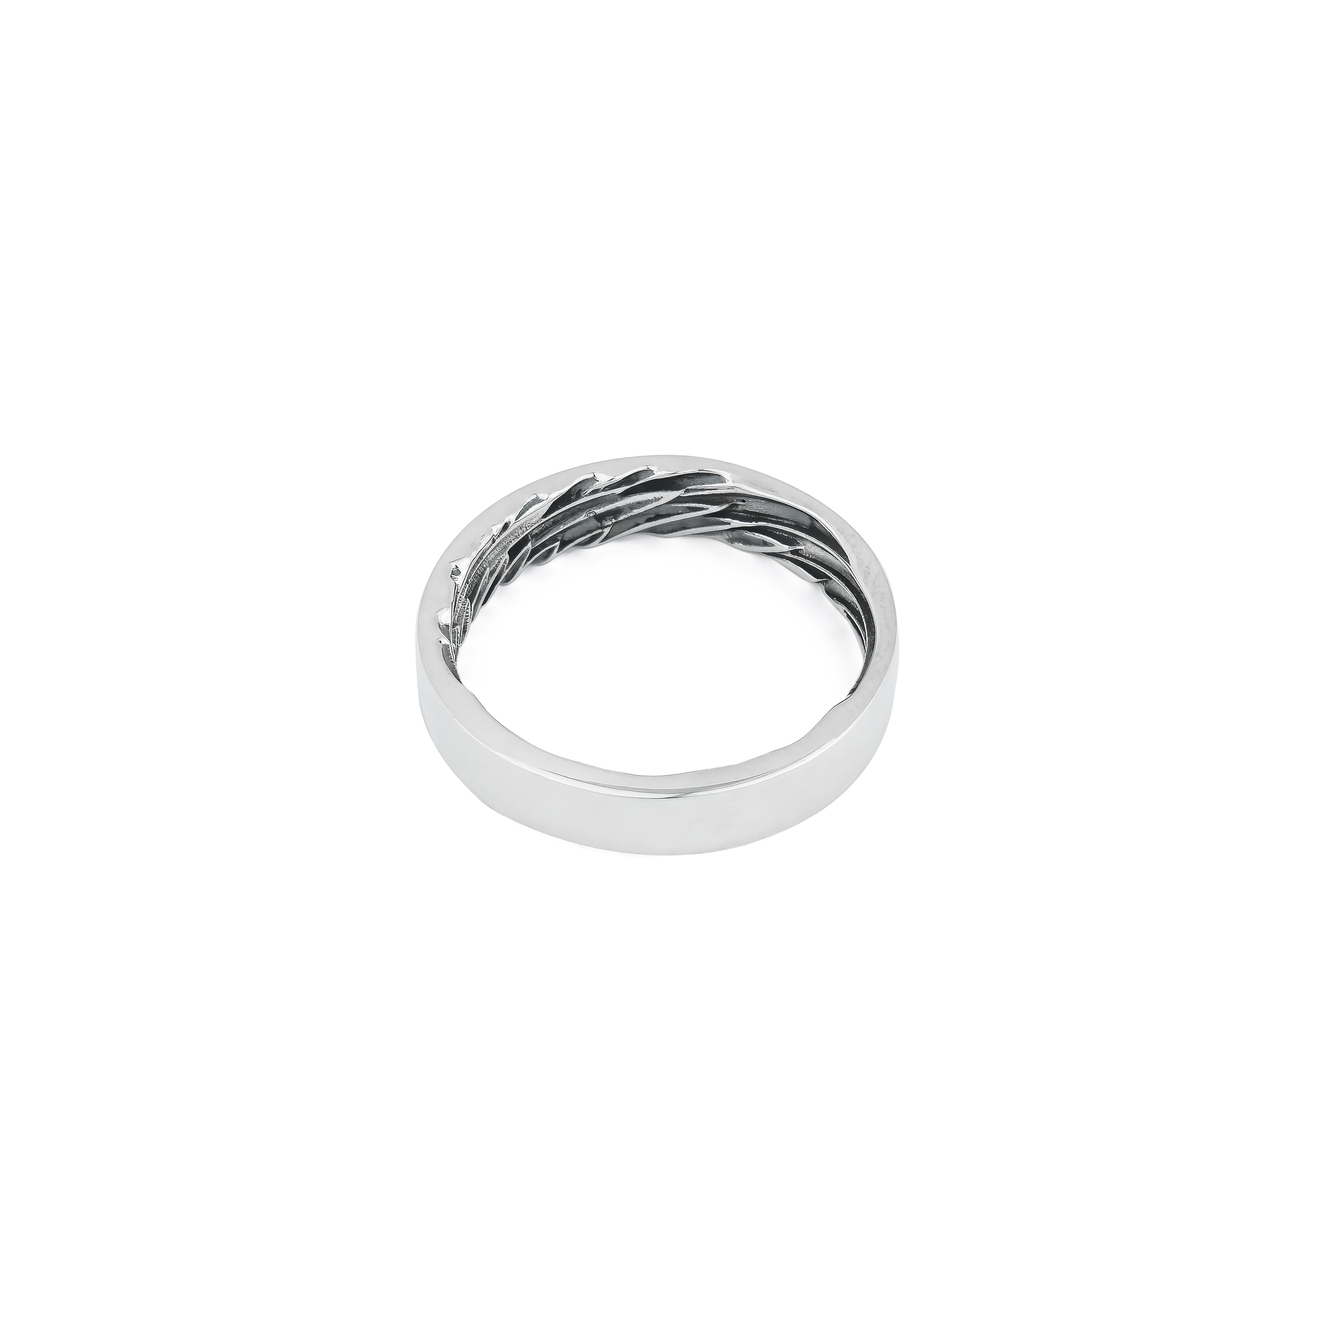 Mates Мужское кольцо-крыло из серебра подвеска крыло из серебра